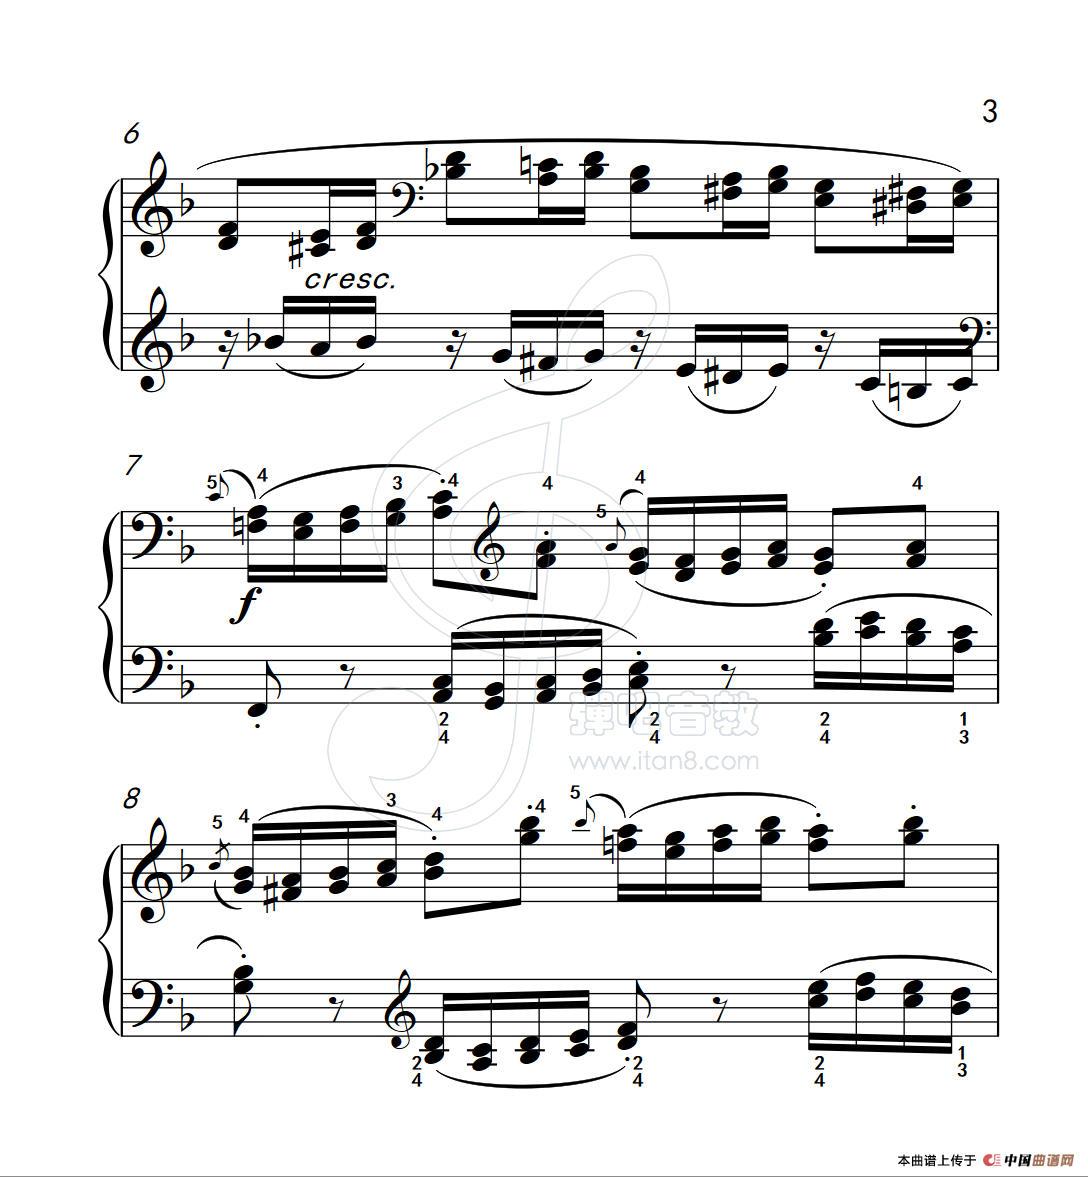 《练习曲 34》钢琴曲谱图分享